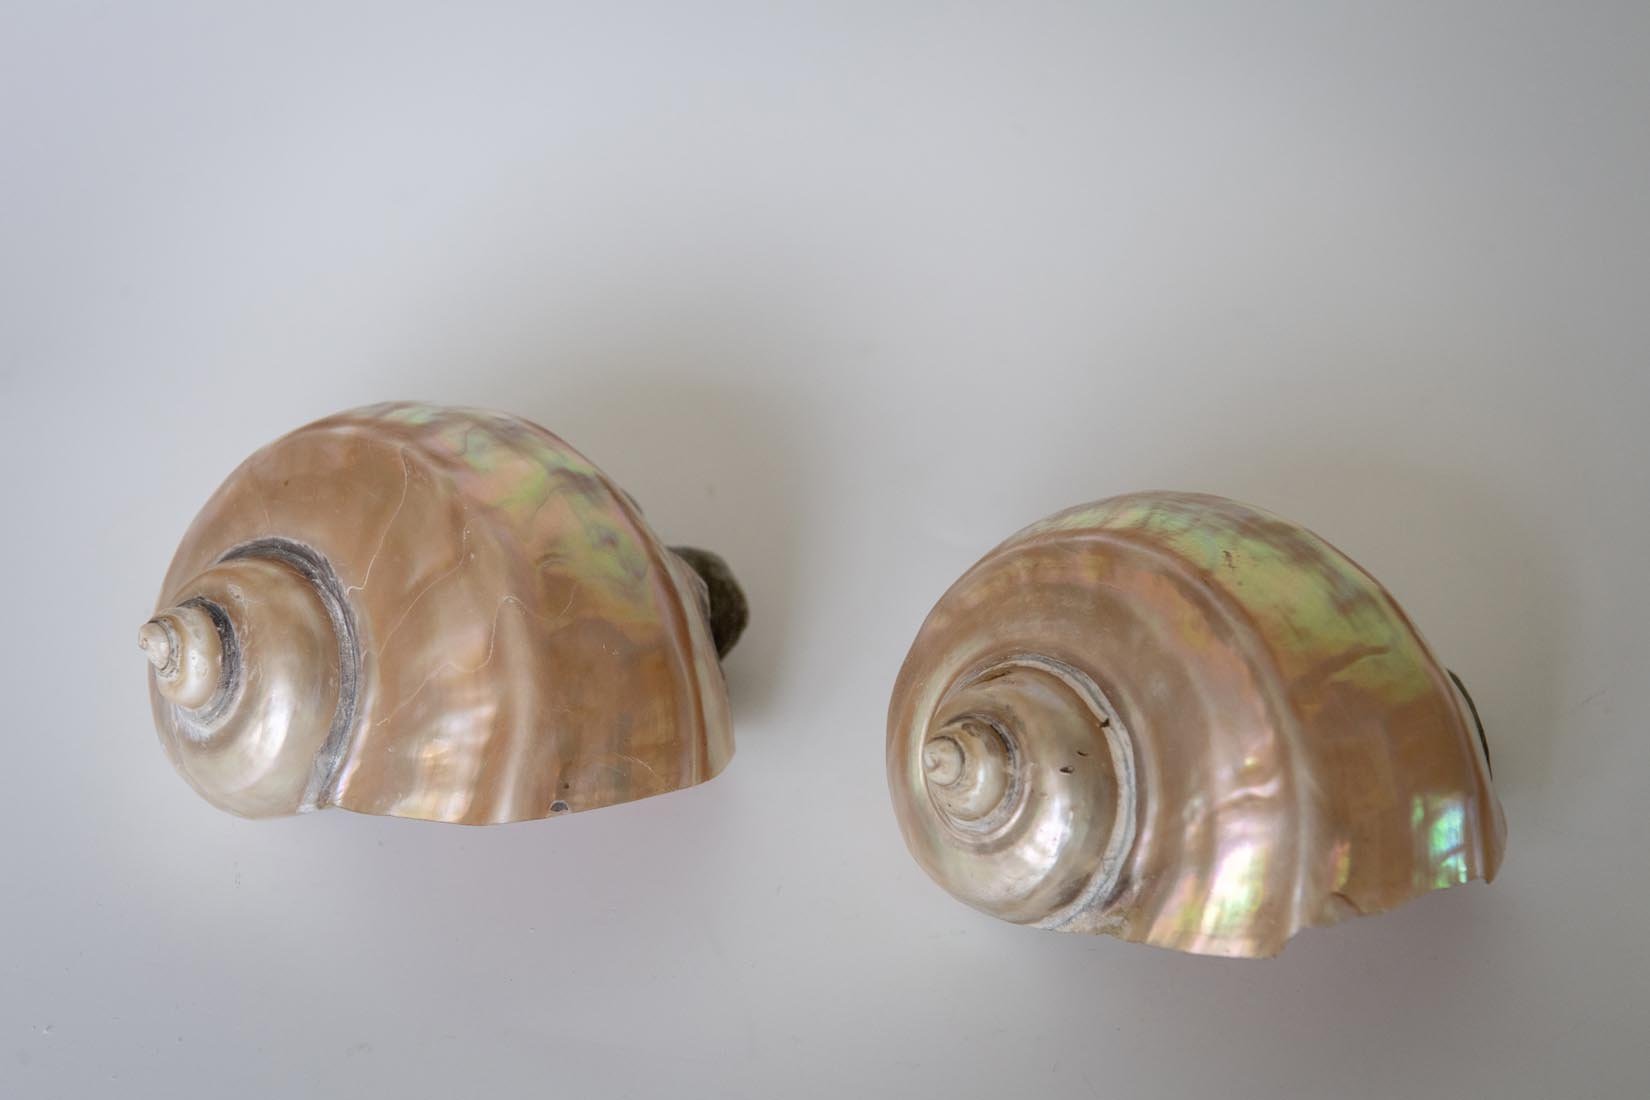 Antique Giant Turbo Marmoratus shell - Natalia Willmott